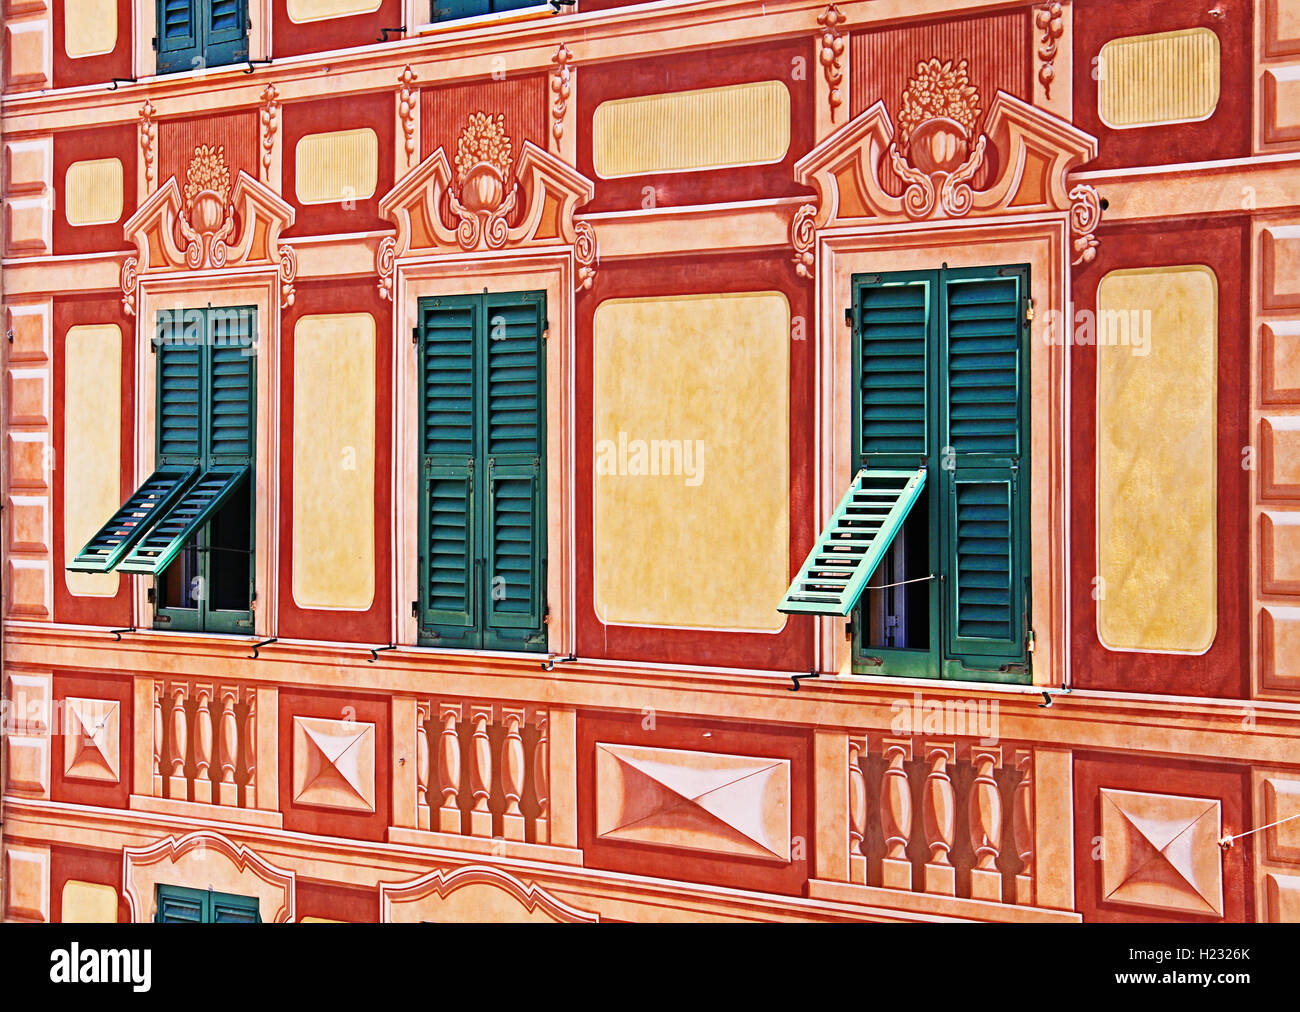 Façade maison ligurienne peint avec des couleurs typiques en perspective forcée, typique de Gênes et de tous les villages de la côte Ligure Banque D'Images